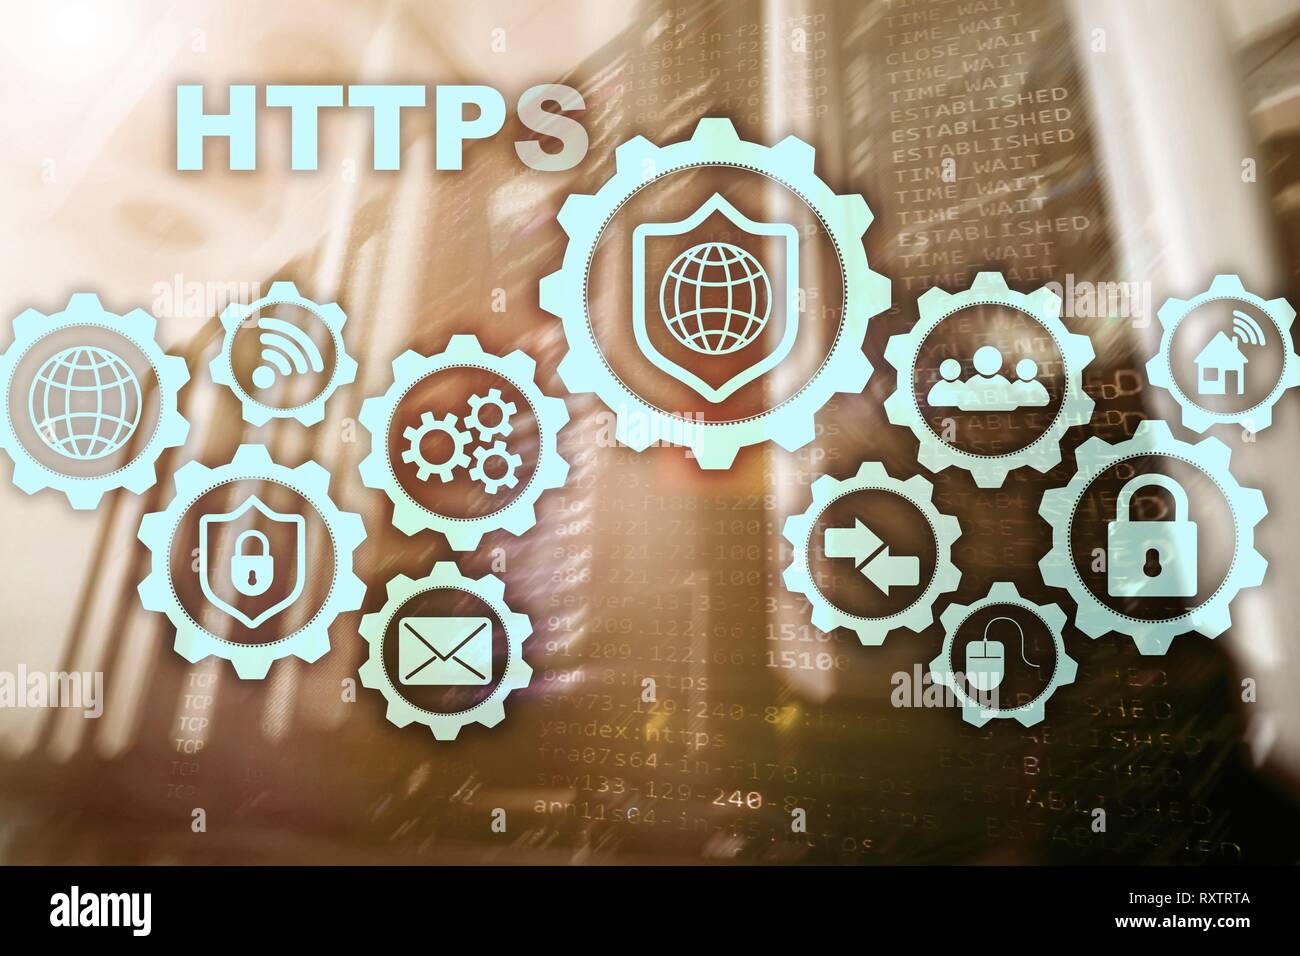 HTTPS. Hypertext Transport Protocol Secure. Technologiekonzept auf dem Server Zimmer Hintergrund. Virtuelle Symbol für Network Security Web Service. Stockfoto